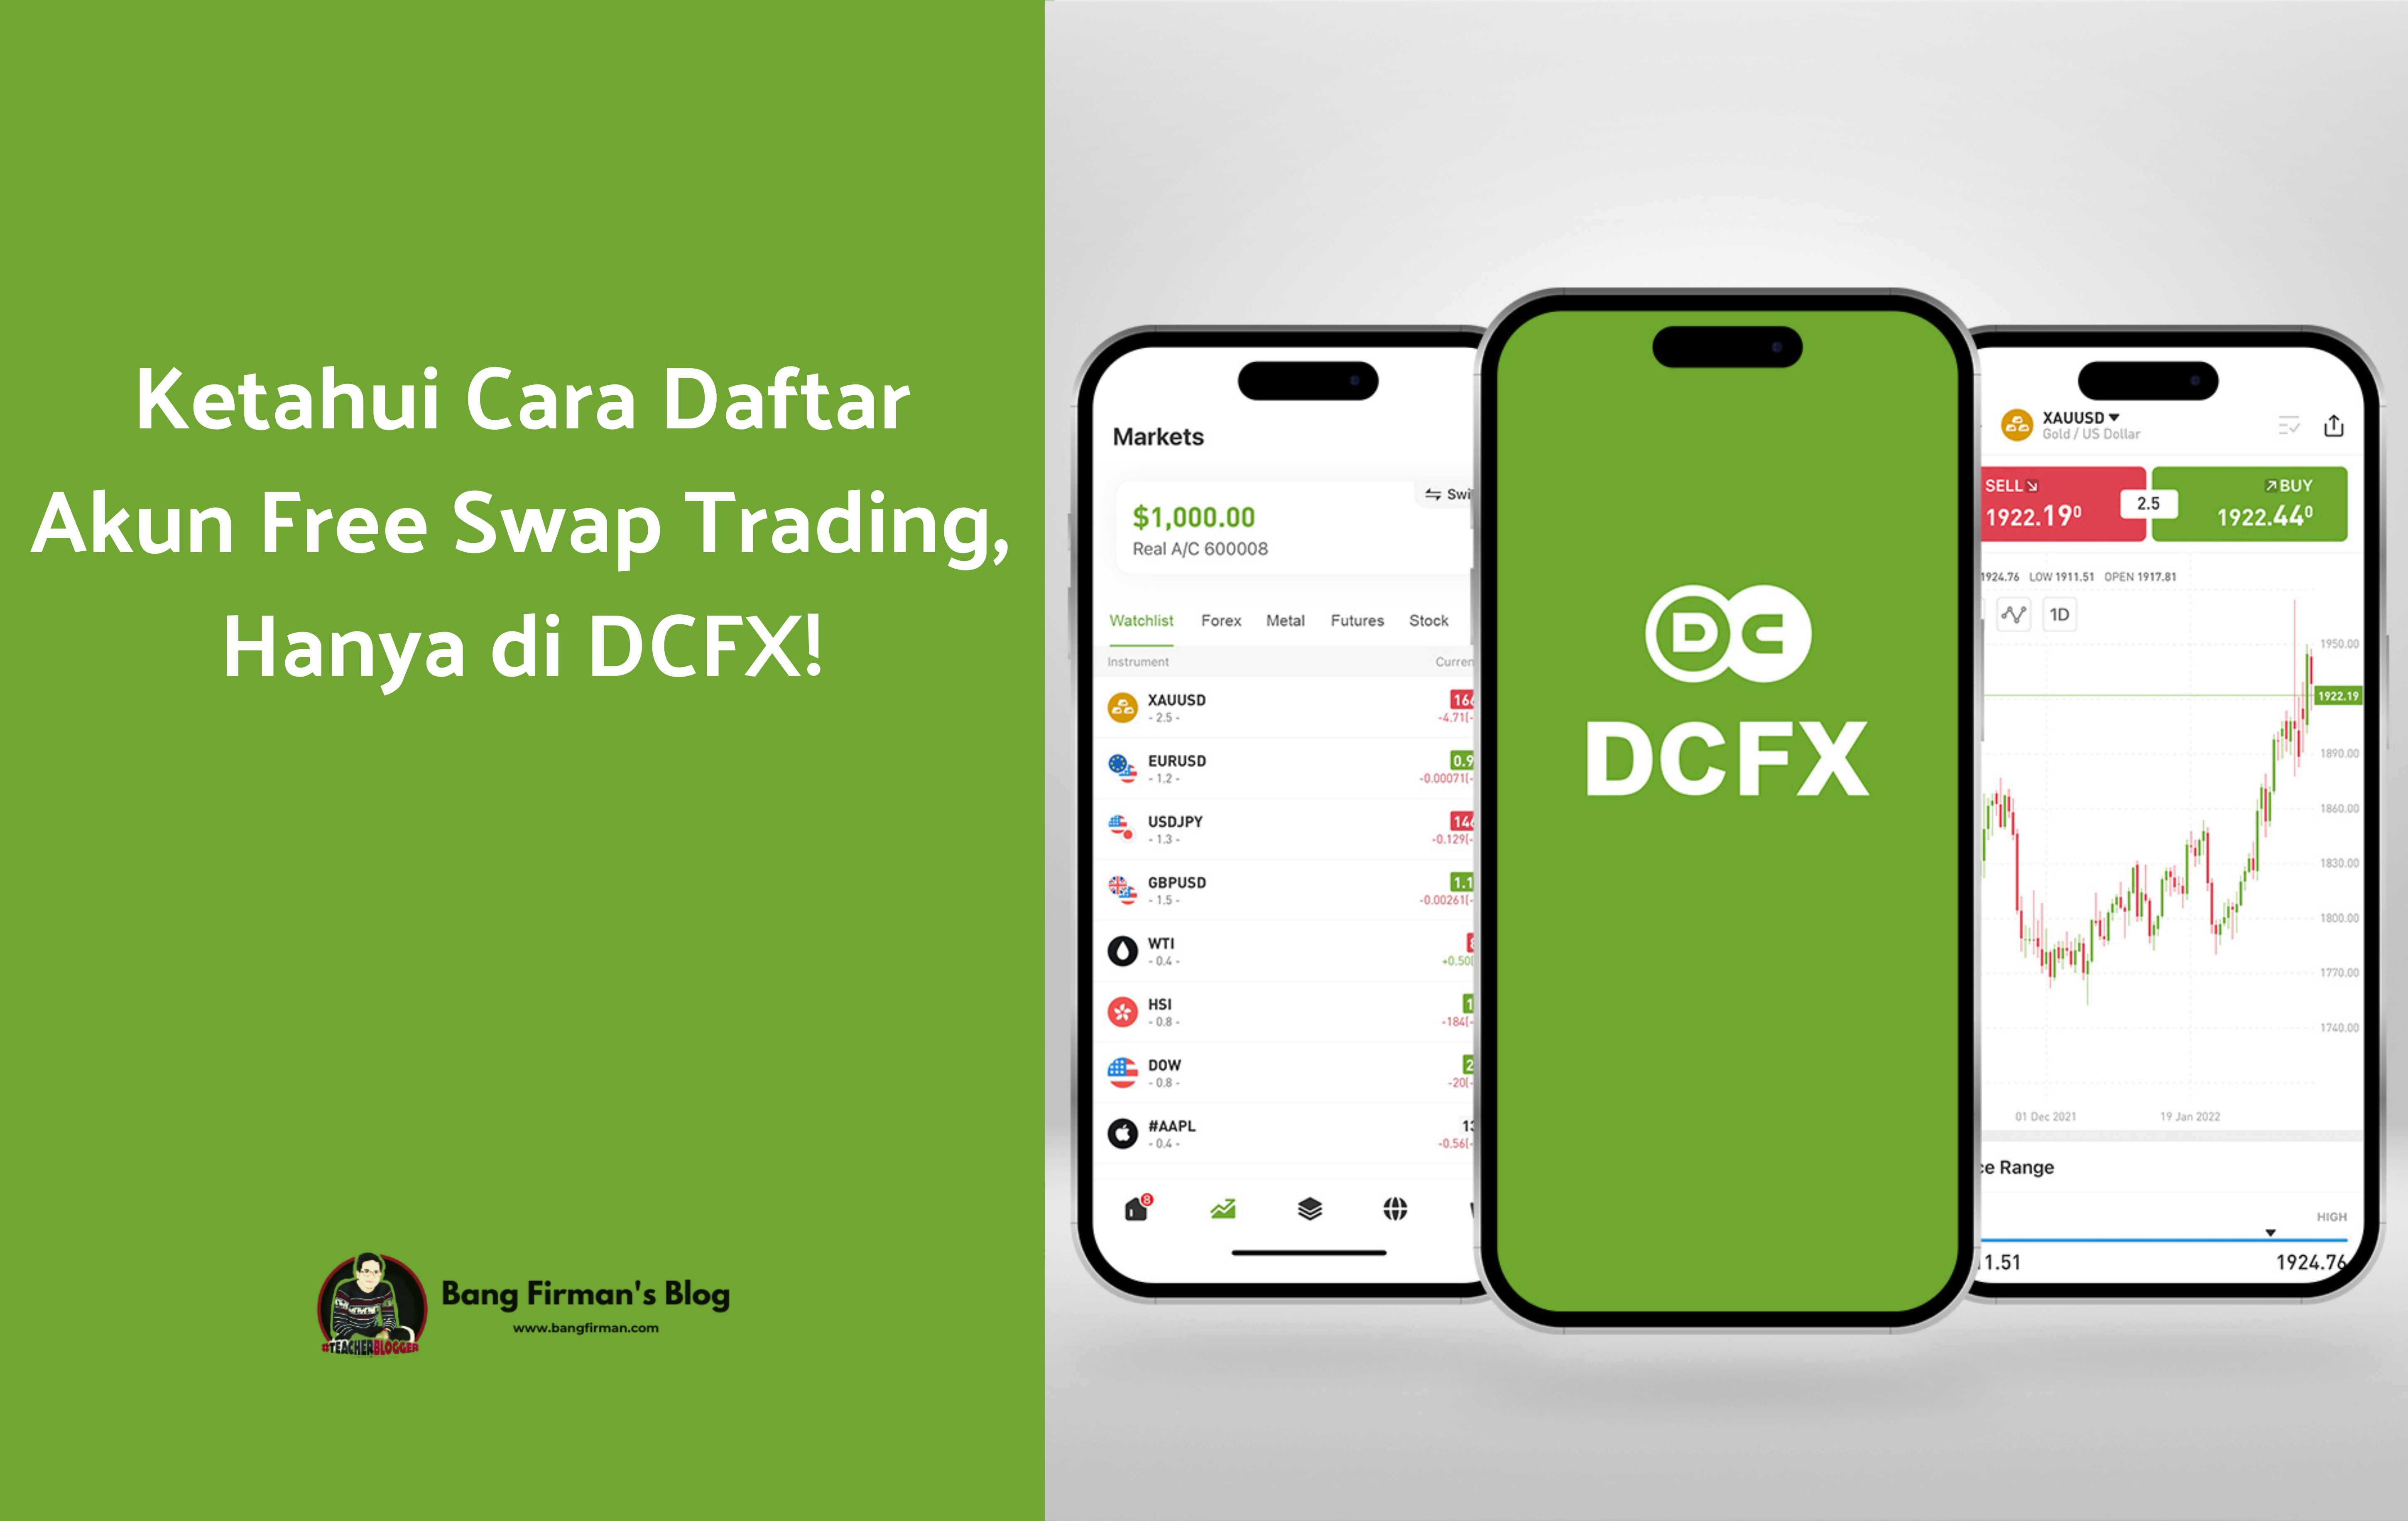 Ketahui Cara Daftar Akun Free Swap Trading, Hanya di DCFX!